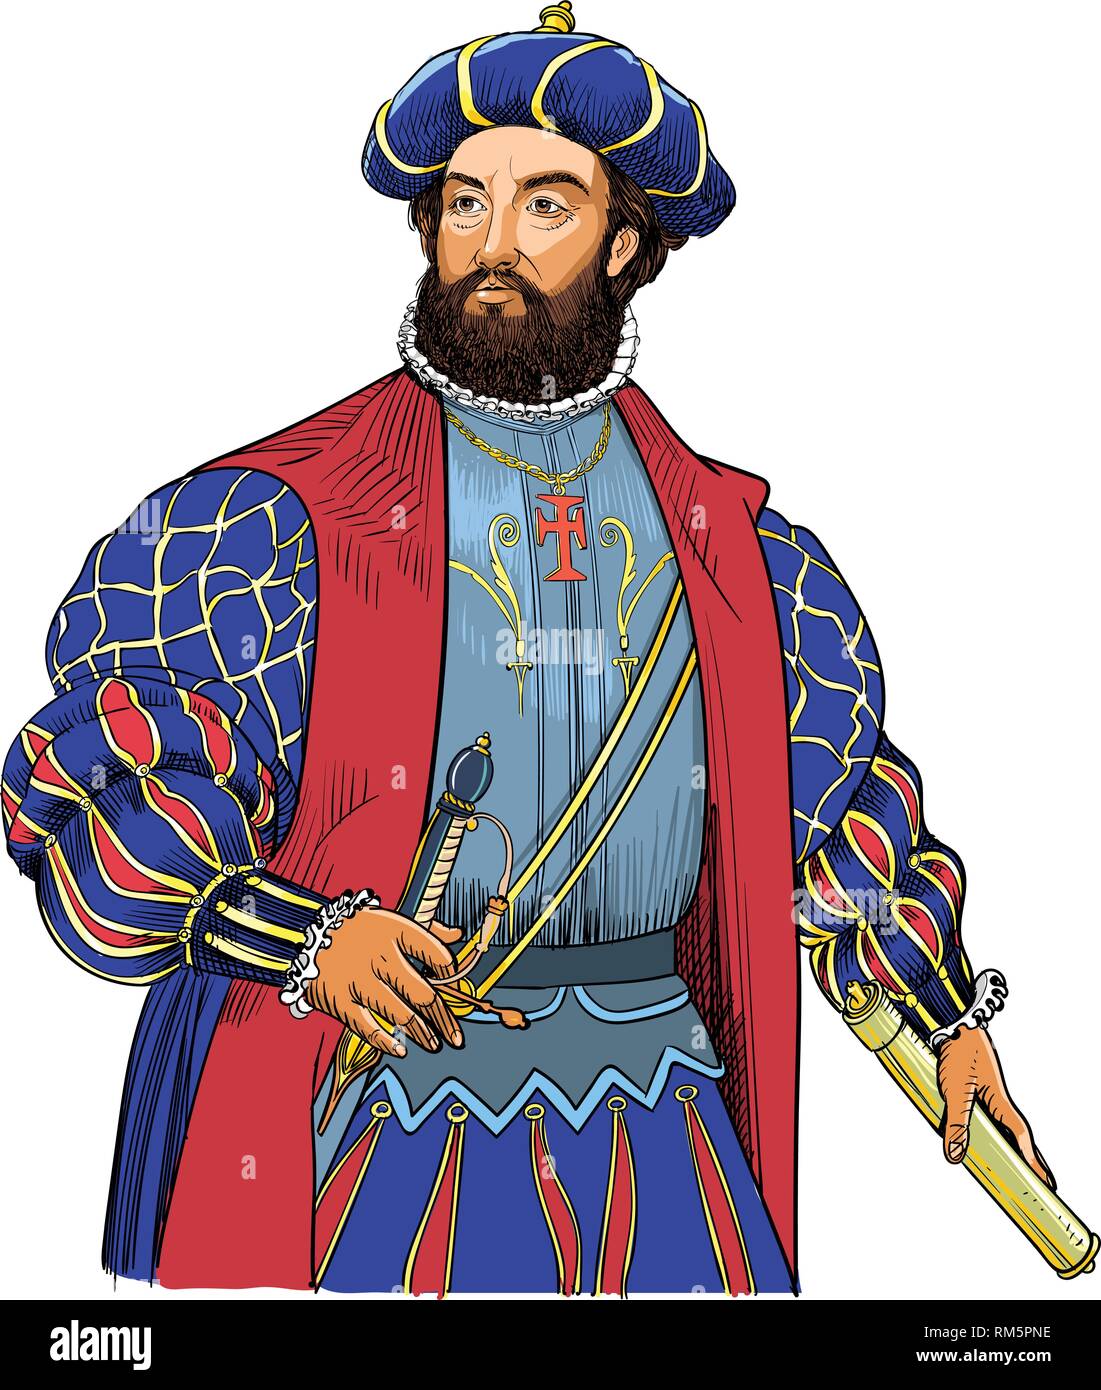 Portrait de Vasco de Gama en ligne. Il a été explorateur portugais et le premier Européen qui atteint l'Inde par la mer arrondi le Cap de Bonne Espérance en 1498. Illustration de Vecteur